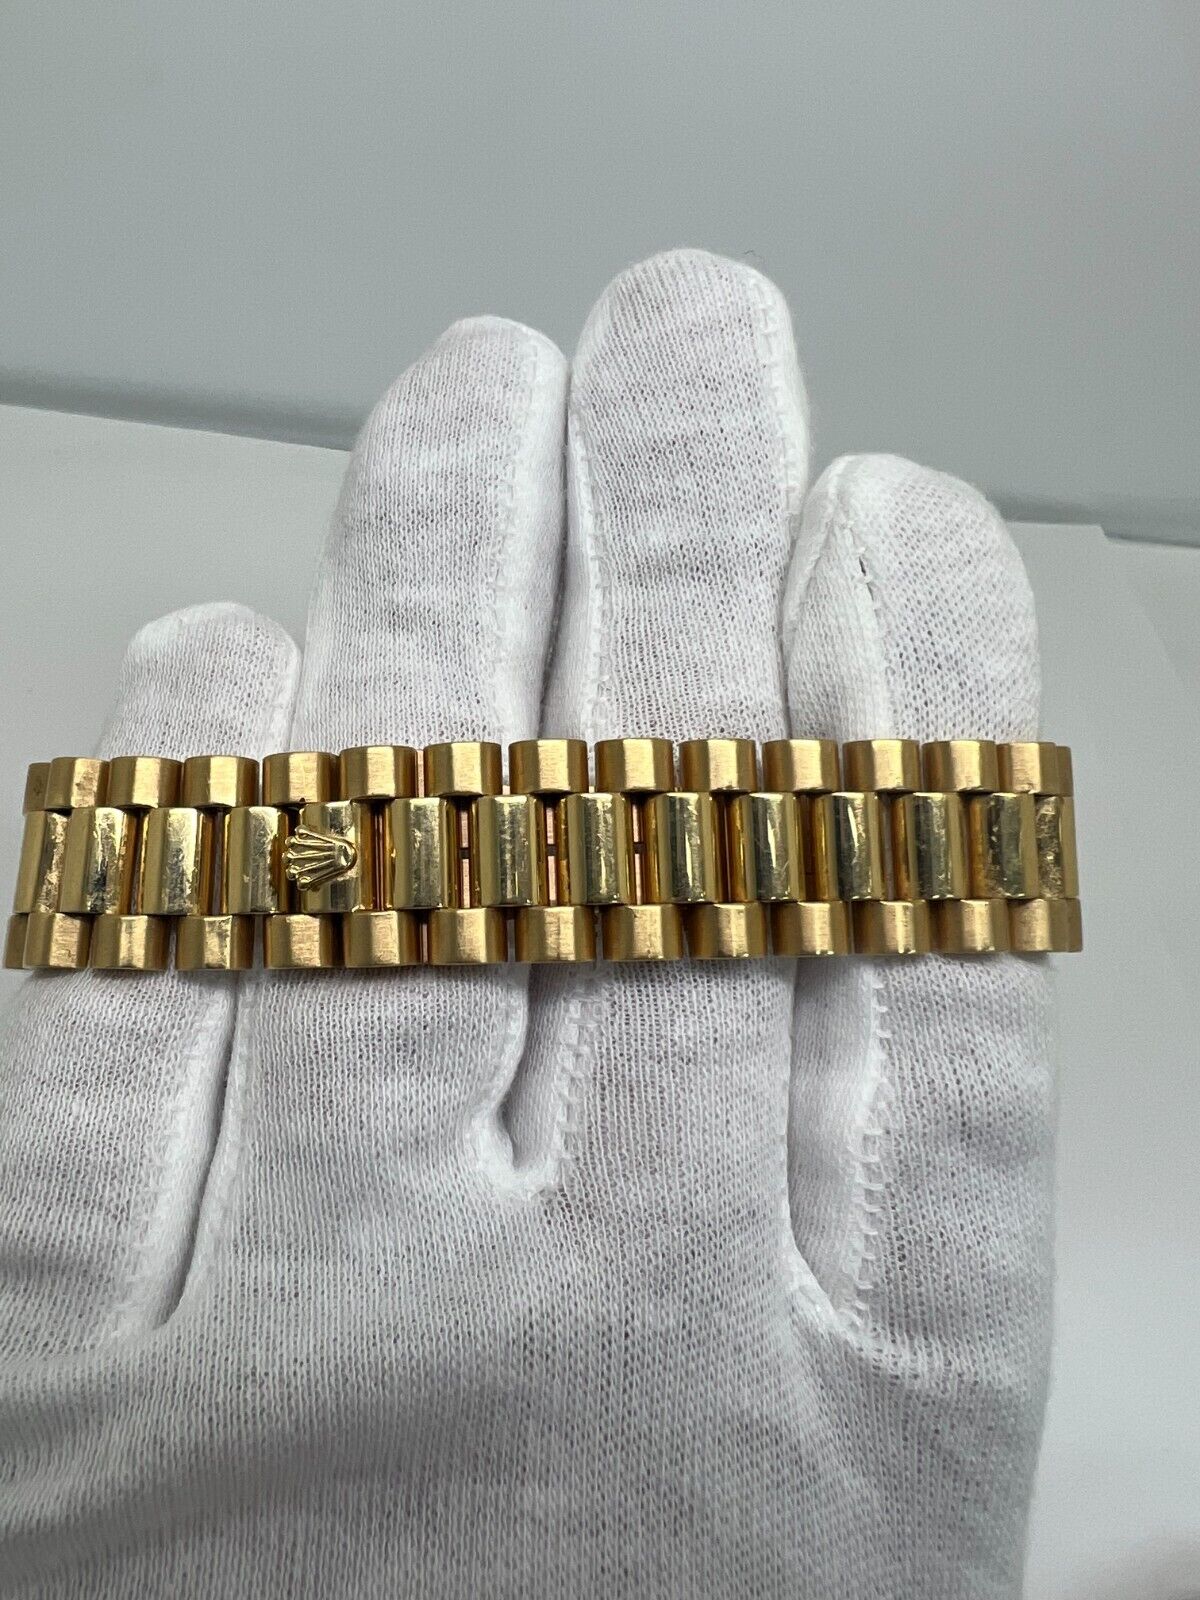 Rolex Daydate 36mm Diamond Dial Factory Watch